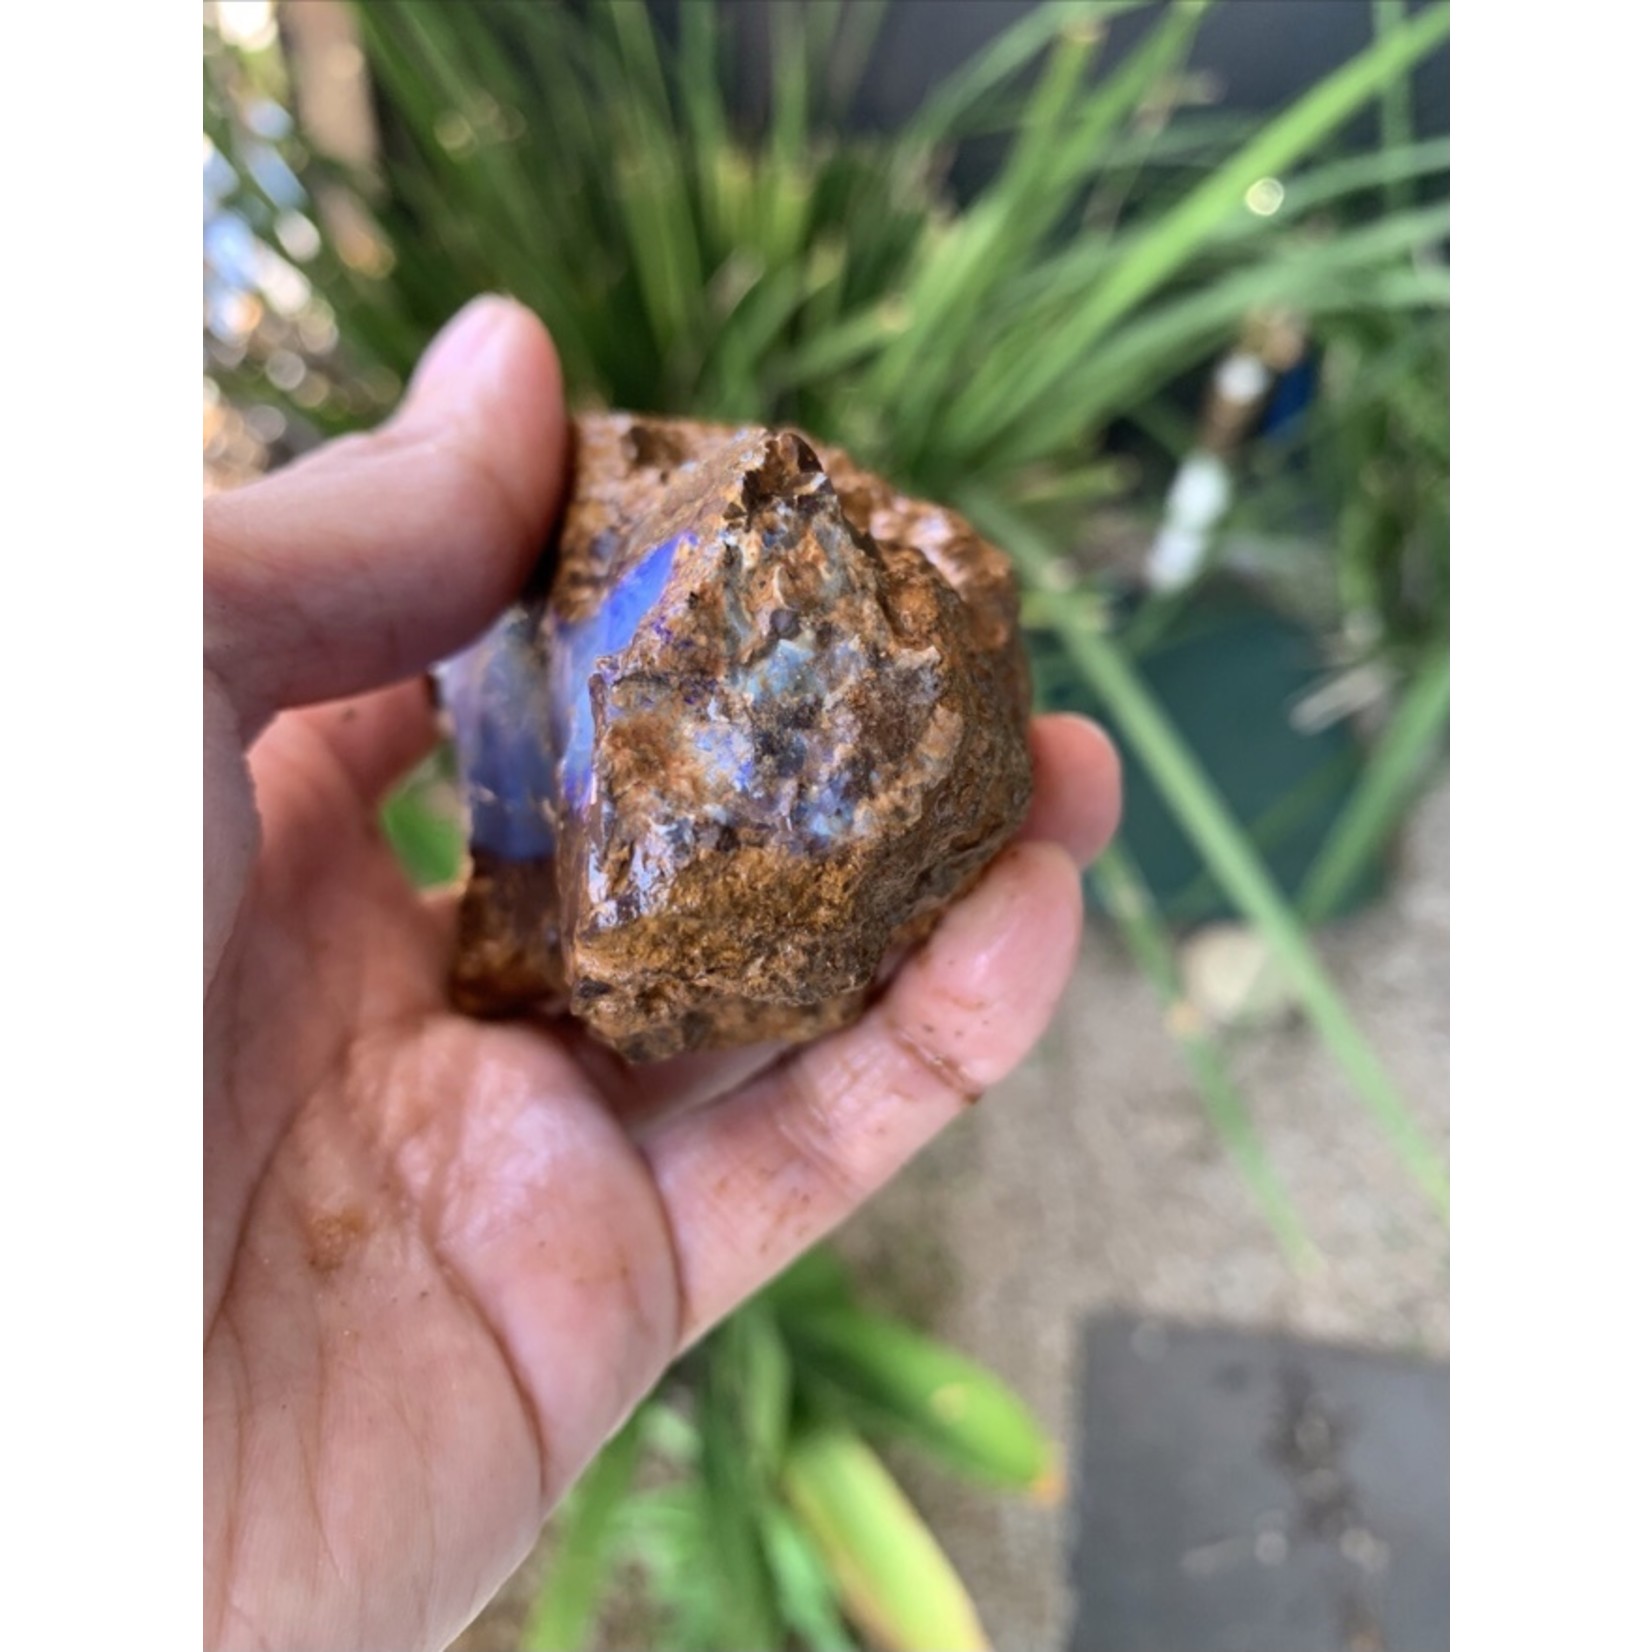 rough boulder opal-lilac